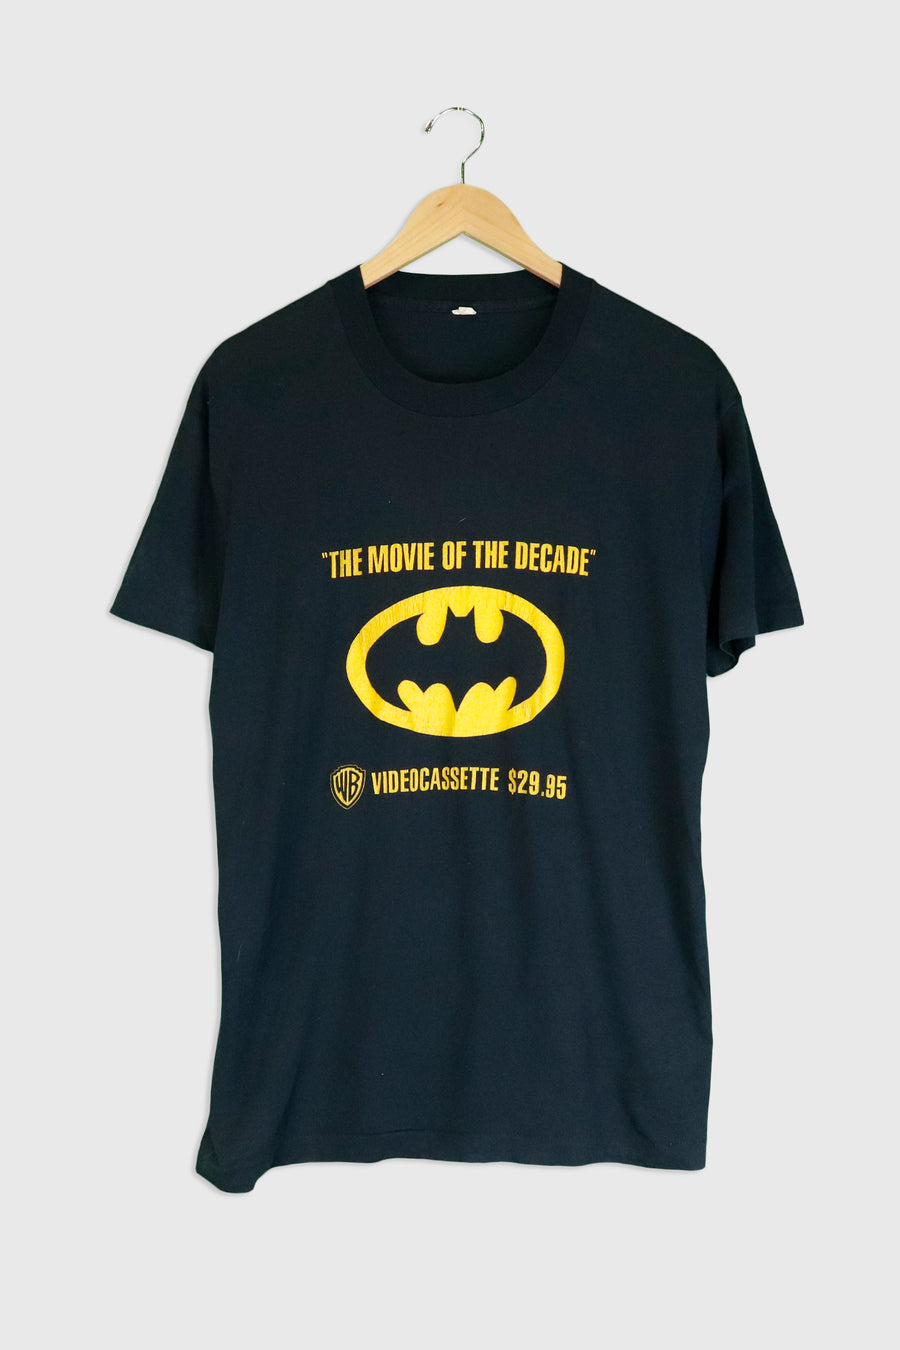 Vintage Batman 'Videocassette' T Shirt Sz XL